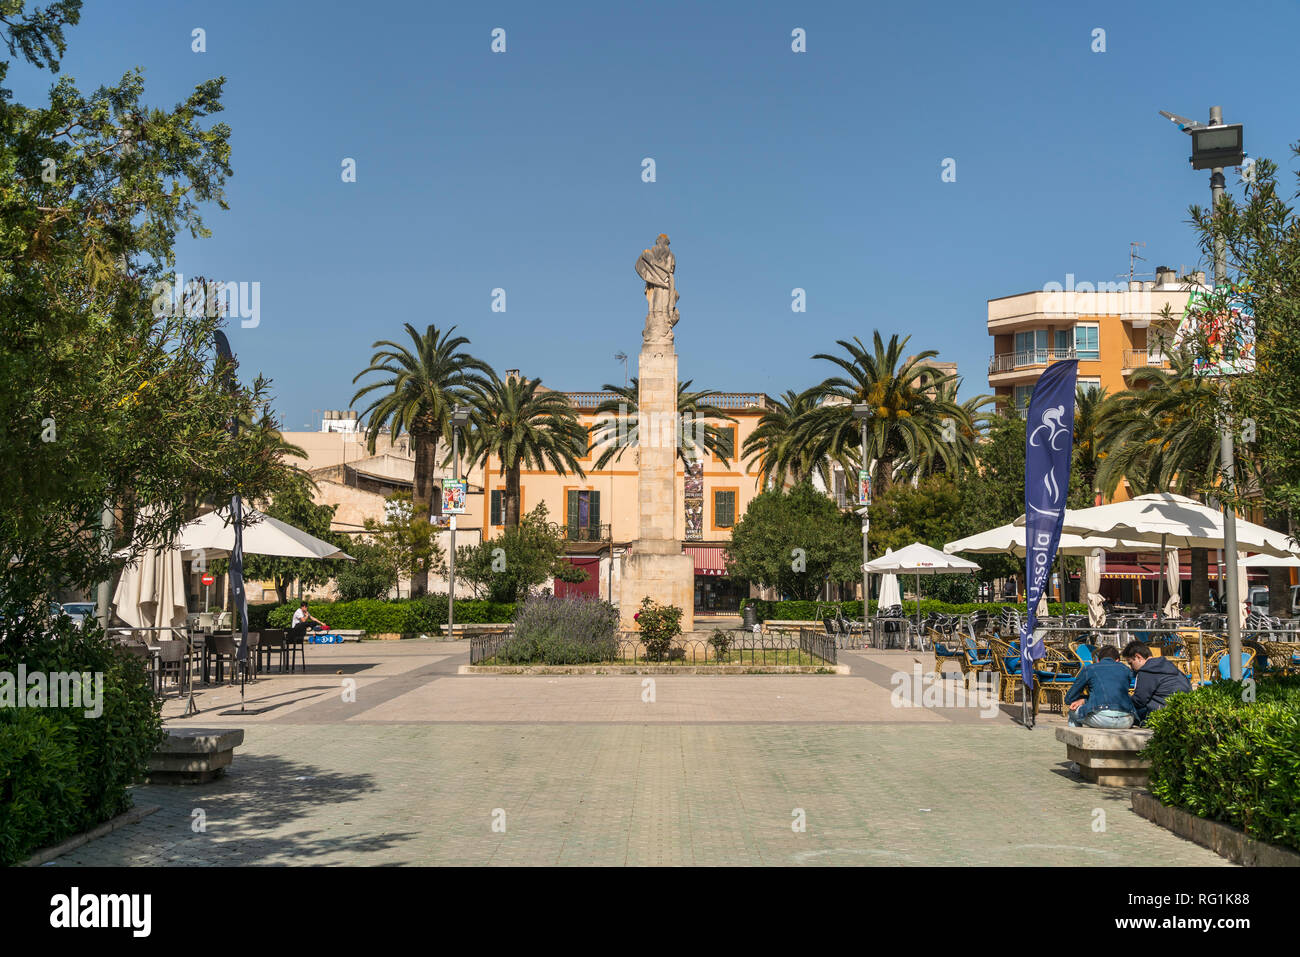 Marktplatz in Felanitx, Mallorca, Balearen, Spanien  |  Felanitx market sqaure, Majorca, Balearic Islands, Spain, Stock Photo